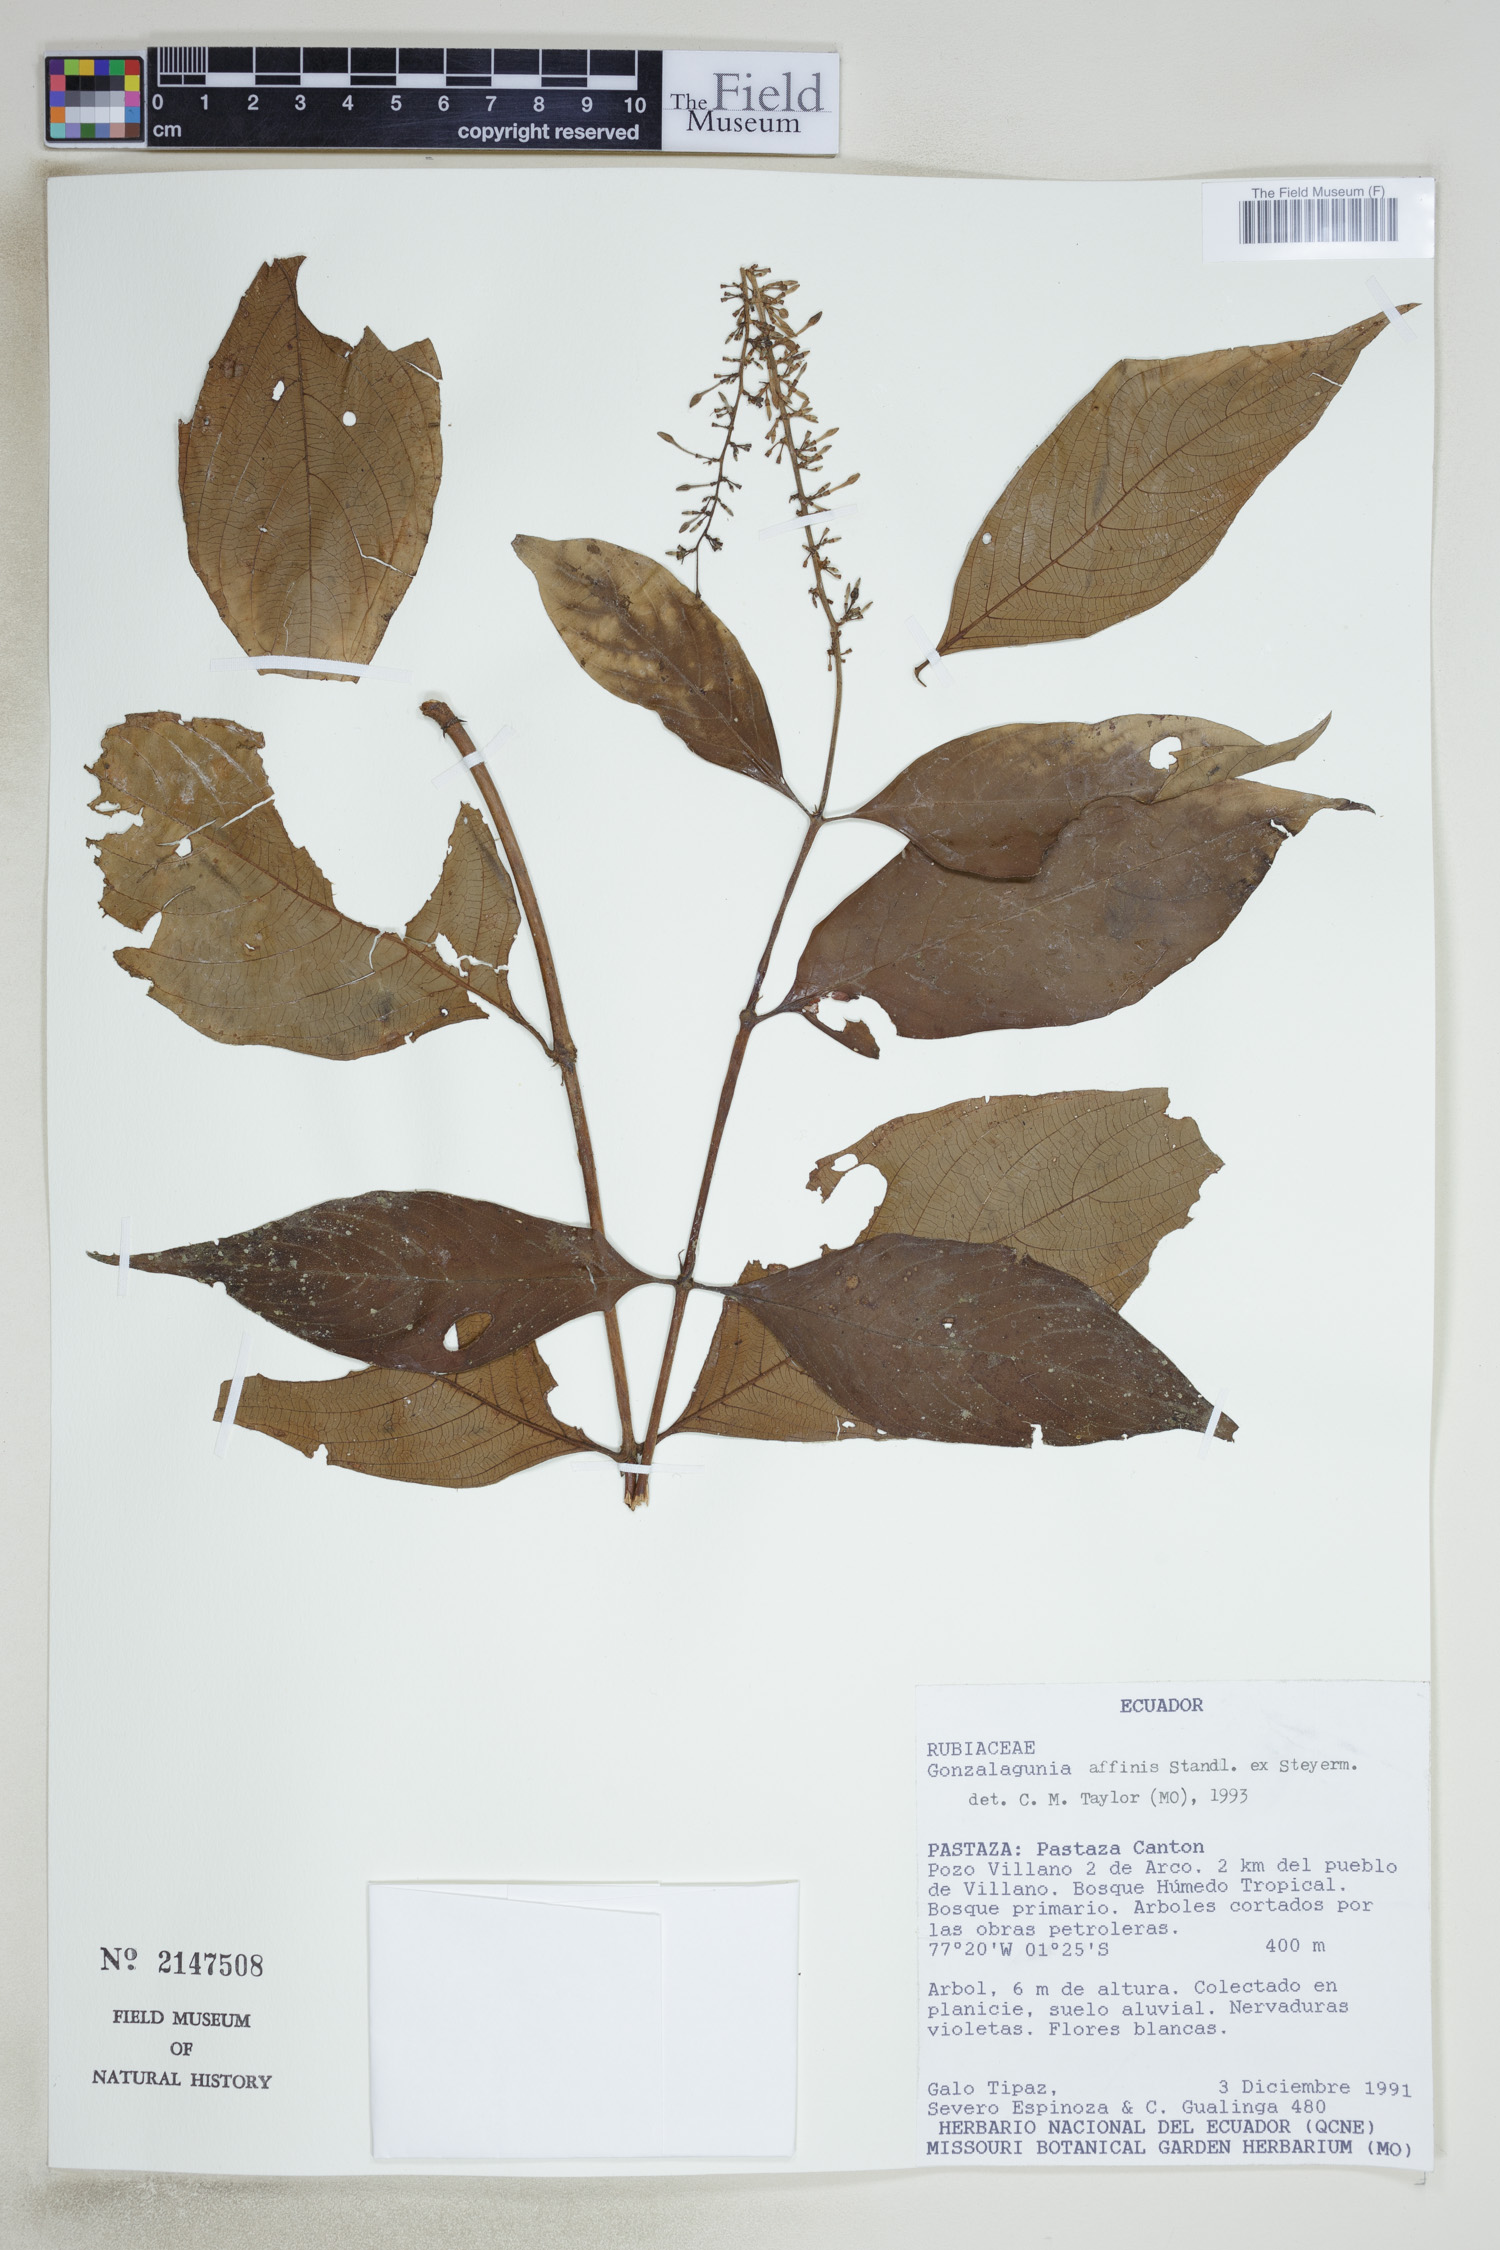 Gonzalagunia affinis image